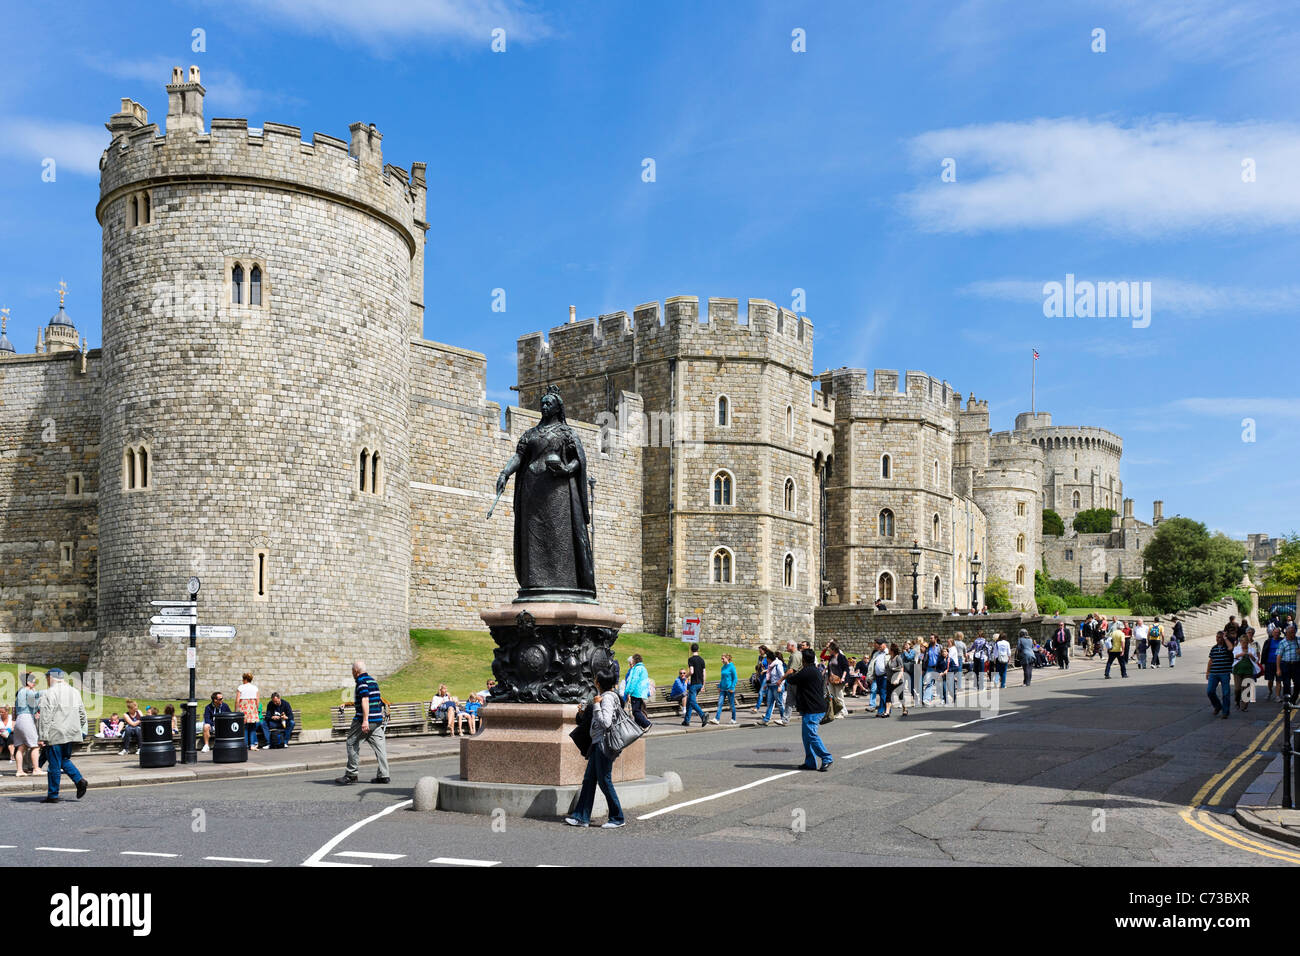 Le Château de Windsor de la Grand-rue avec statue de la reine Victoria à l'avant-plan, Windsor, Berkshire, England, UK Banque D'Images